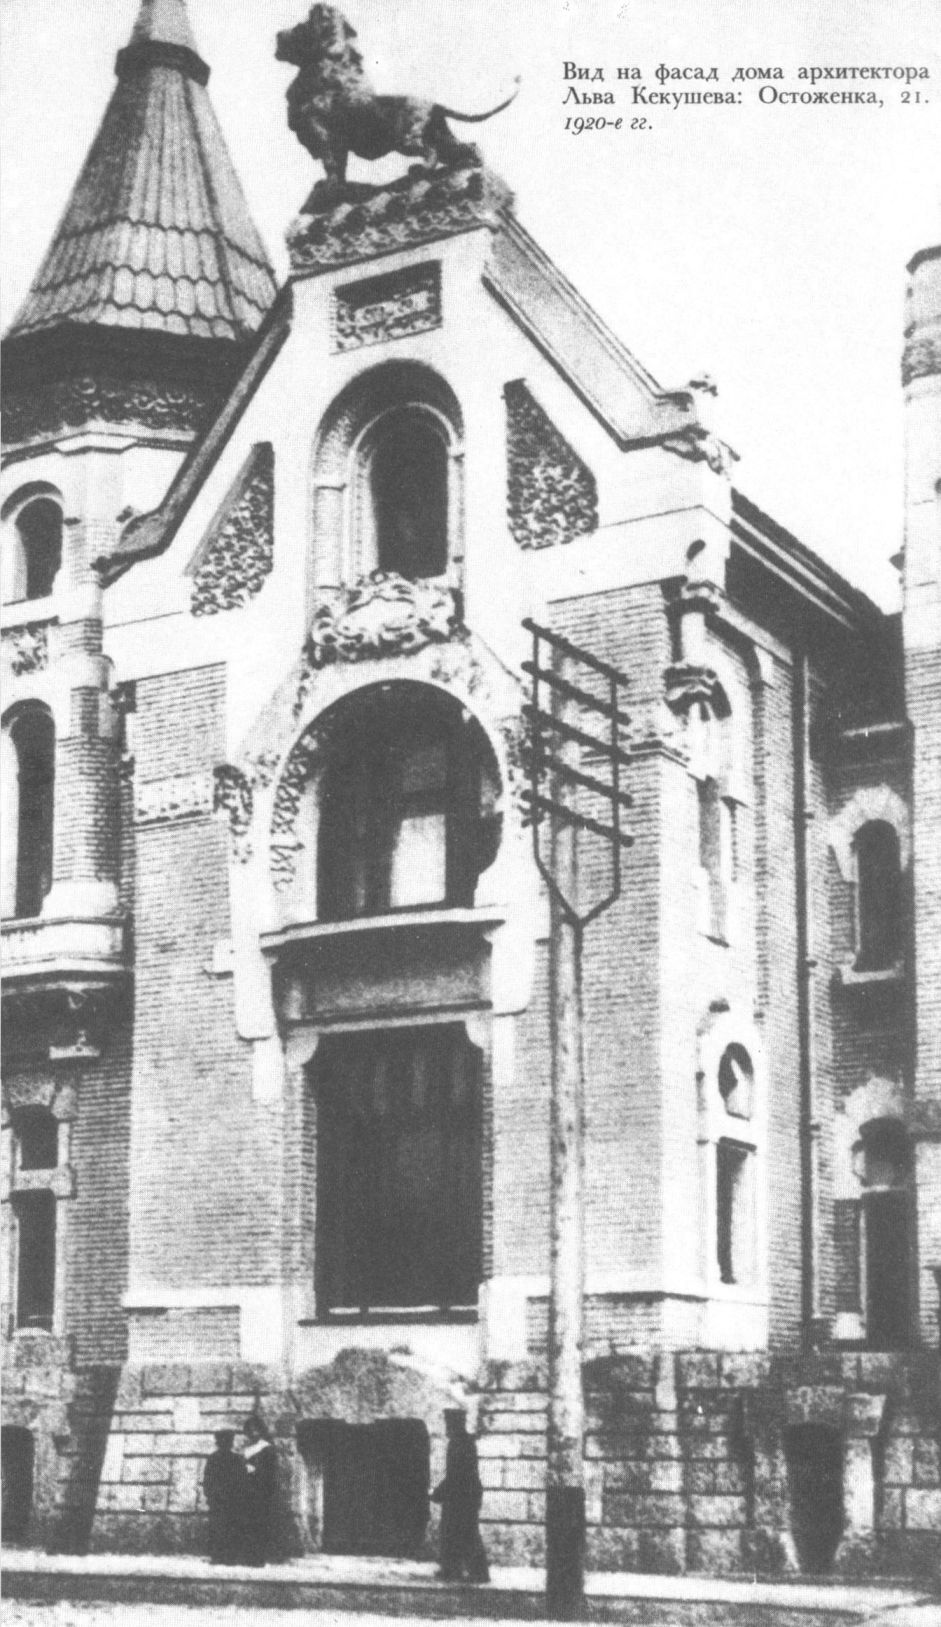 Вид на фасад дома архитектора Льва Кекушева: Остоженка, 21. 1920-е гг.